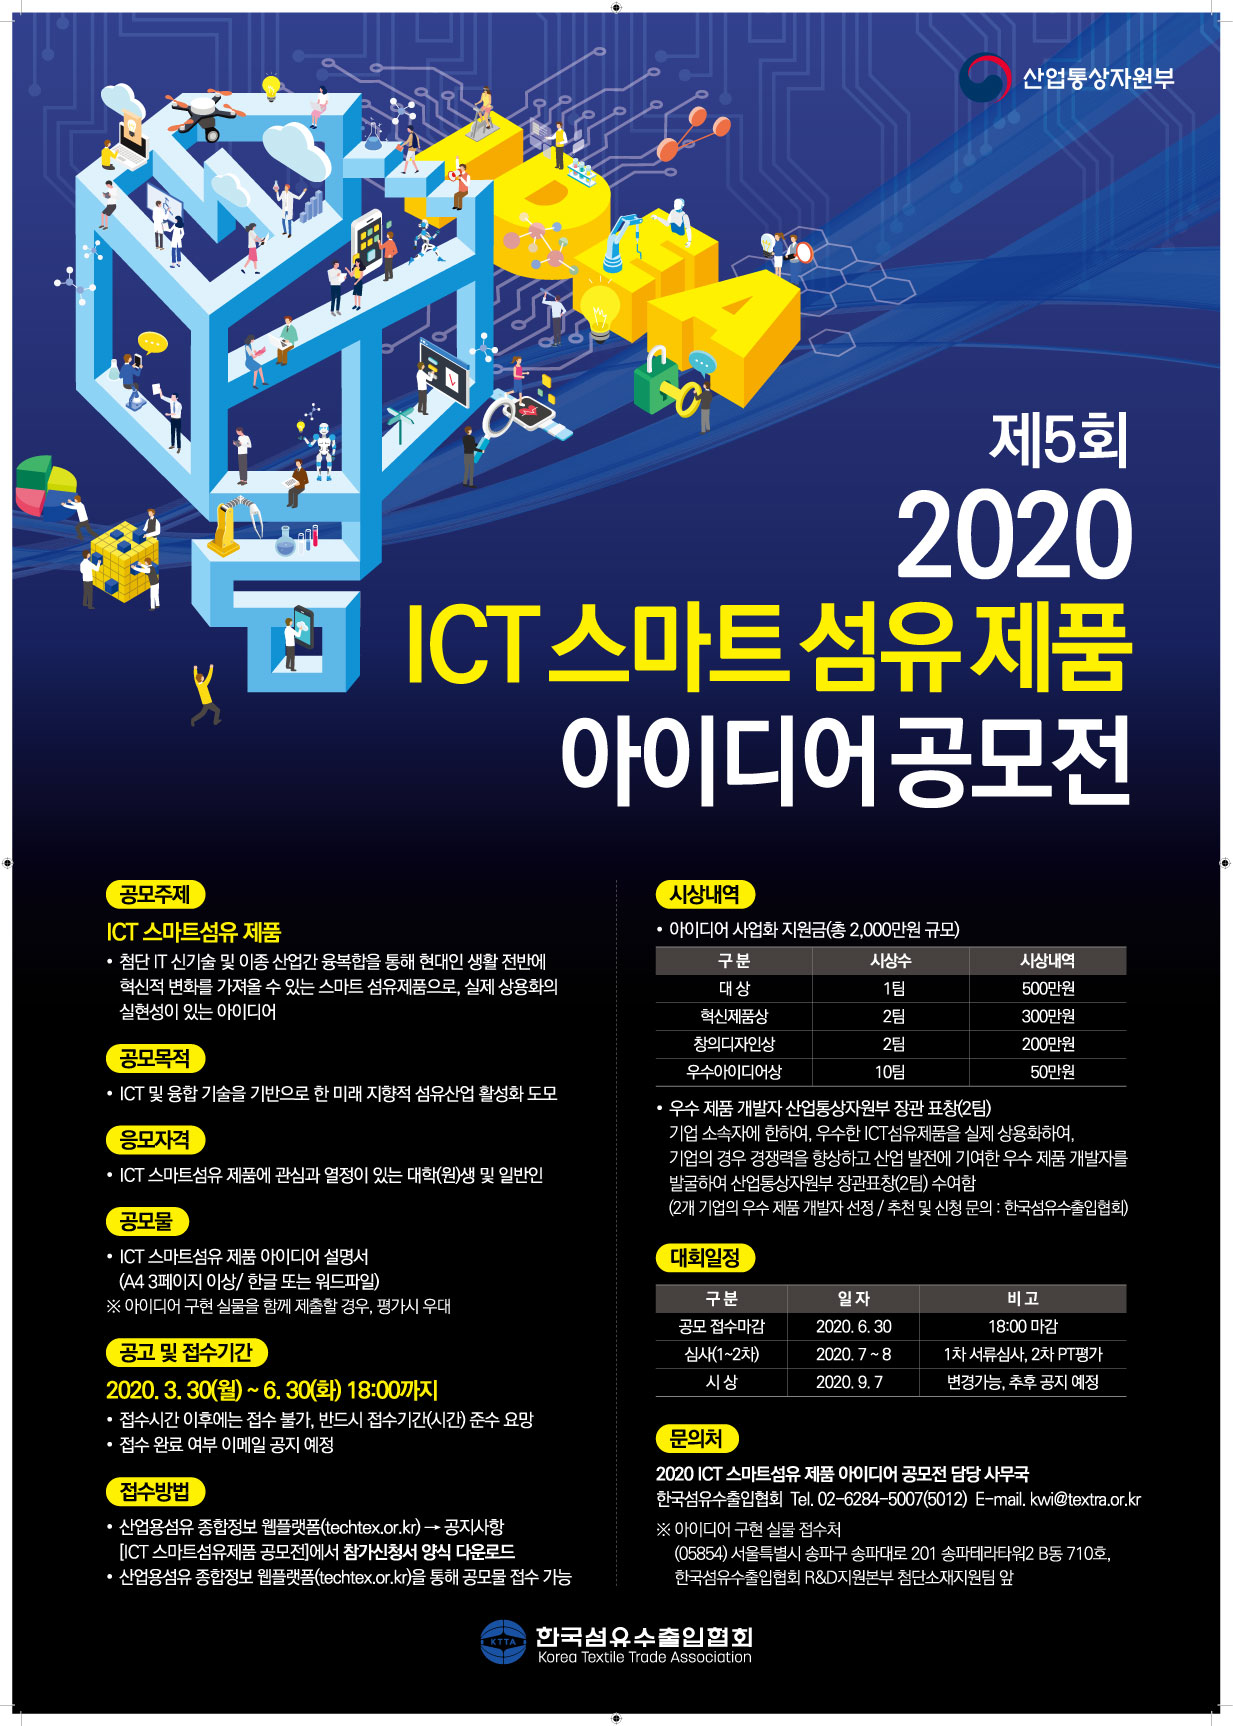 제 5회 2020 ICT 스마트 섬유 제품 아이디어 공모전